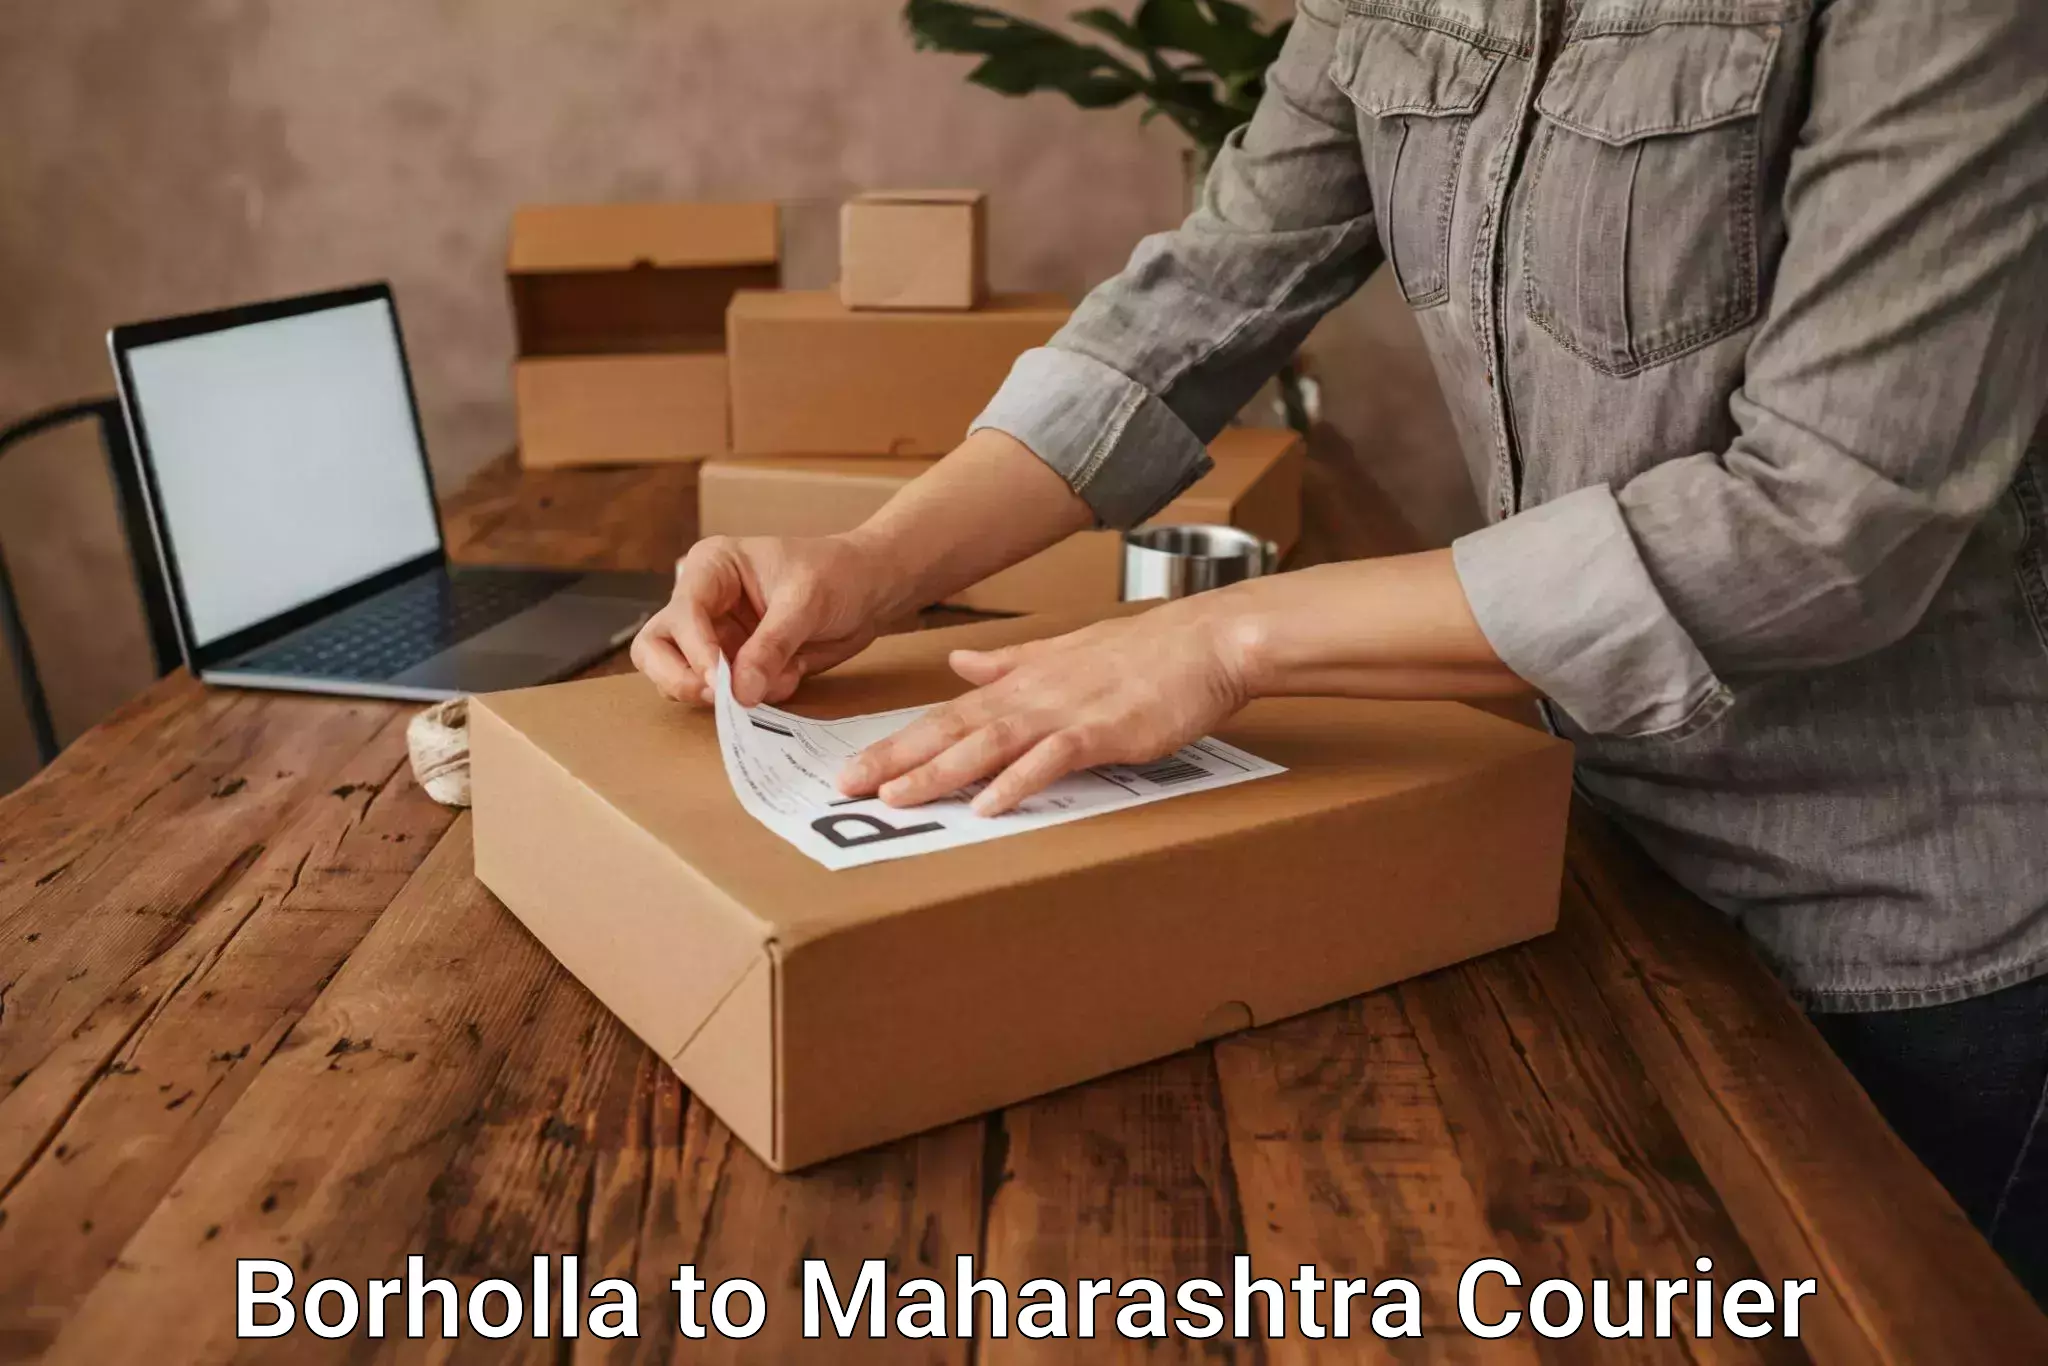 Courier service innovation Borholla to Maharashtra